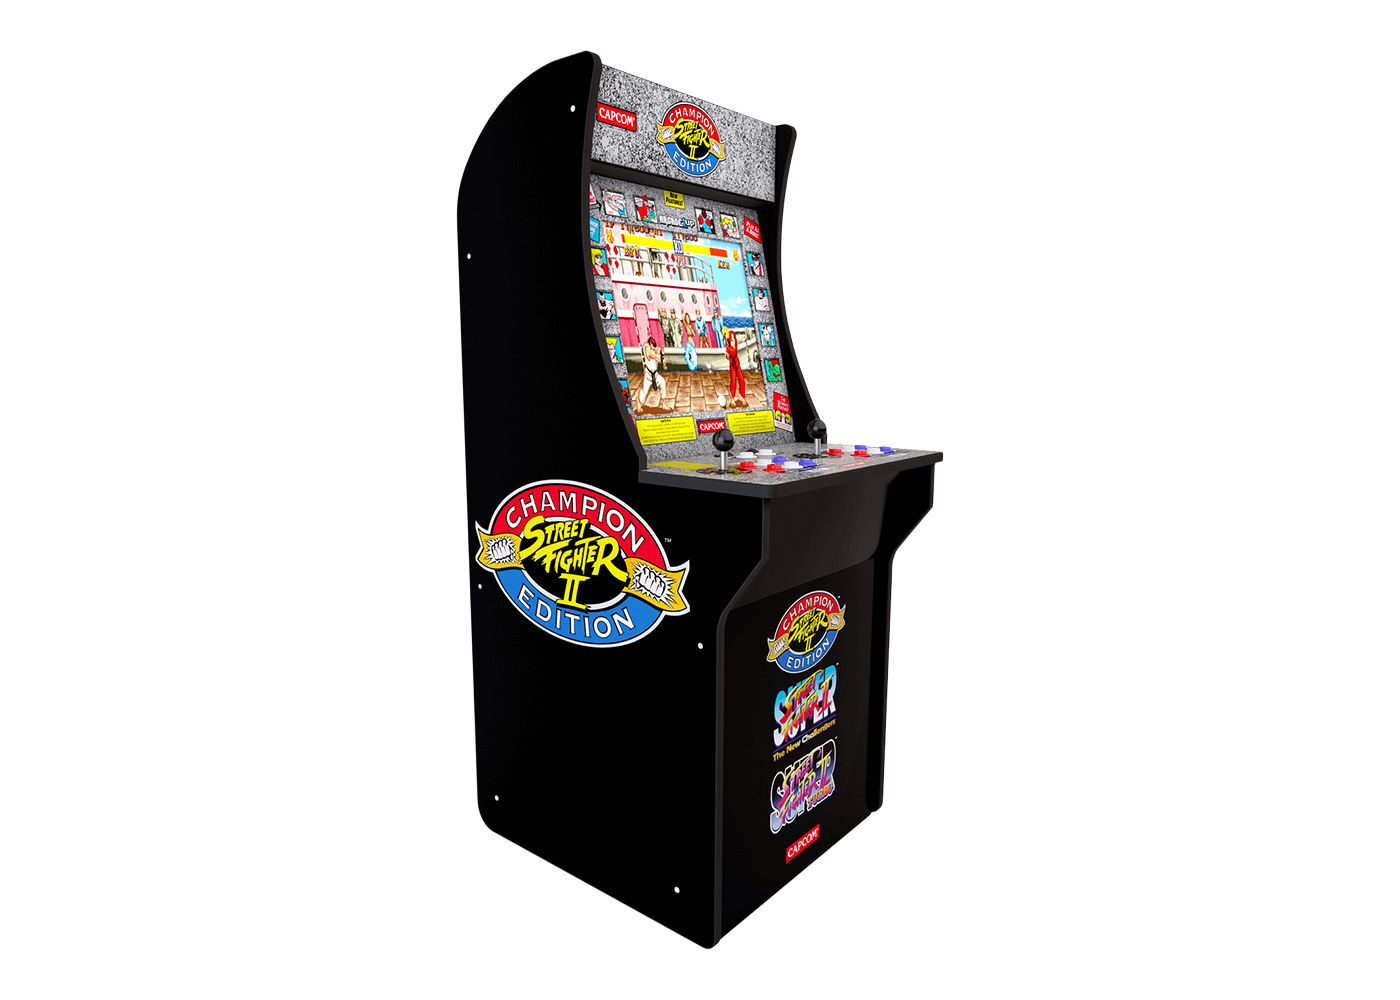 【送料無料格安】Arcade 1UP Street Fighter II 8 in 1 Partycade ゲーム筐体 輸入品 新品送料込 (ストリートファイターII・魔界村・ストライダー飛竜 他) 筐体、コントロールパネル